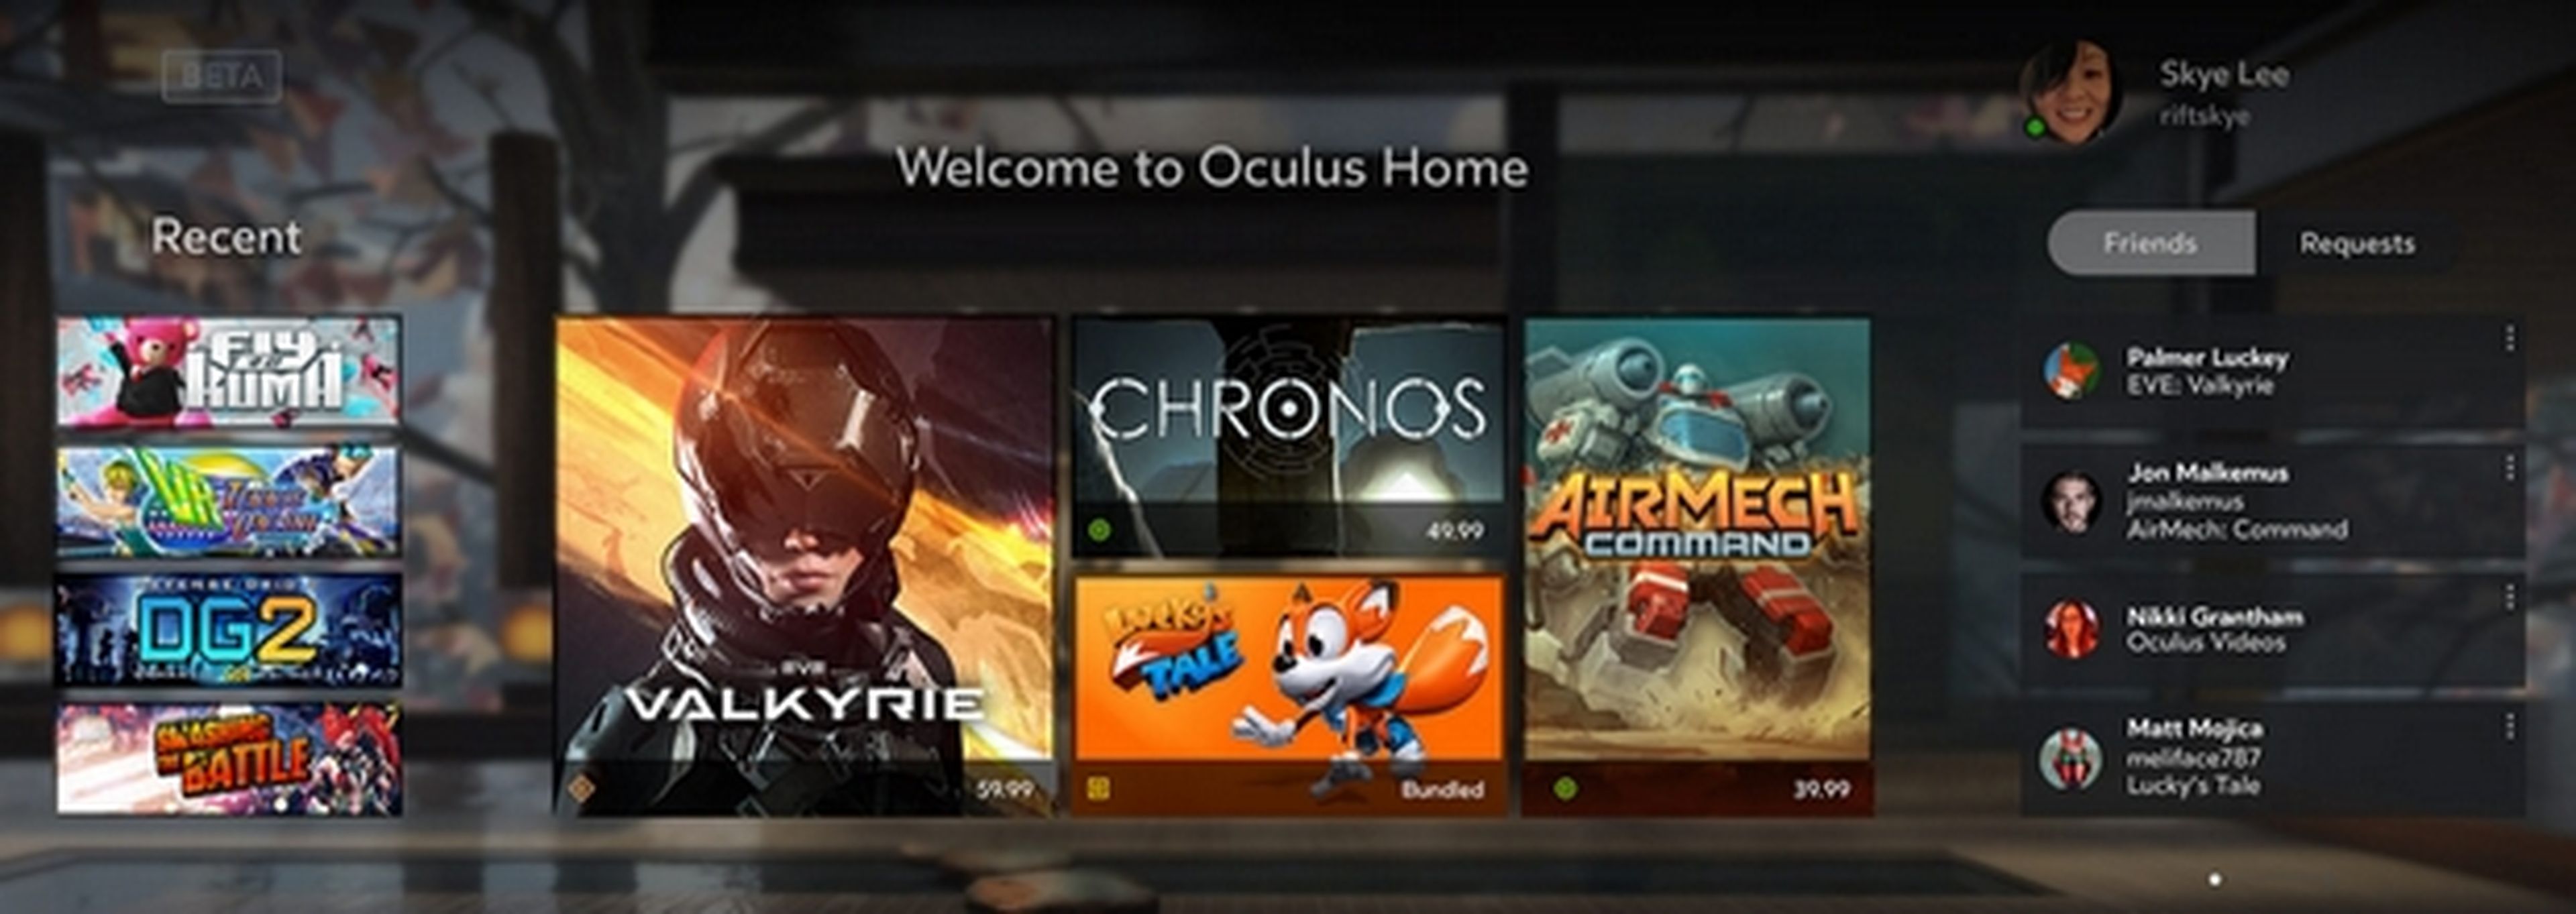 Oculus Rift ya a la venta, te contamos todo lo que ofrece la Realidad Virtual